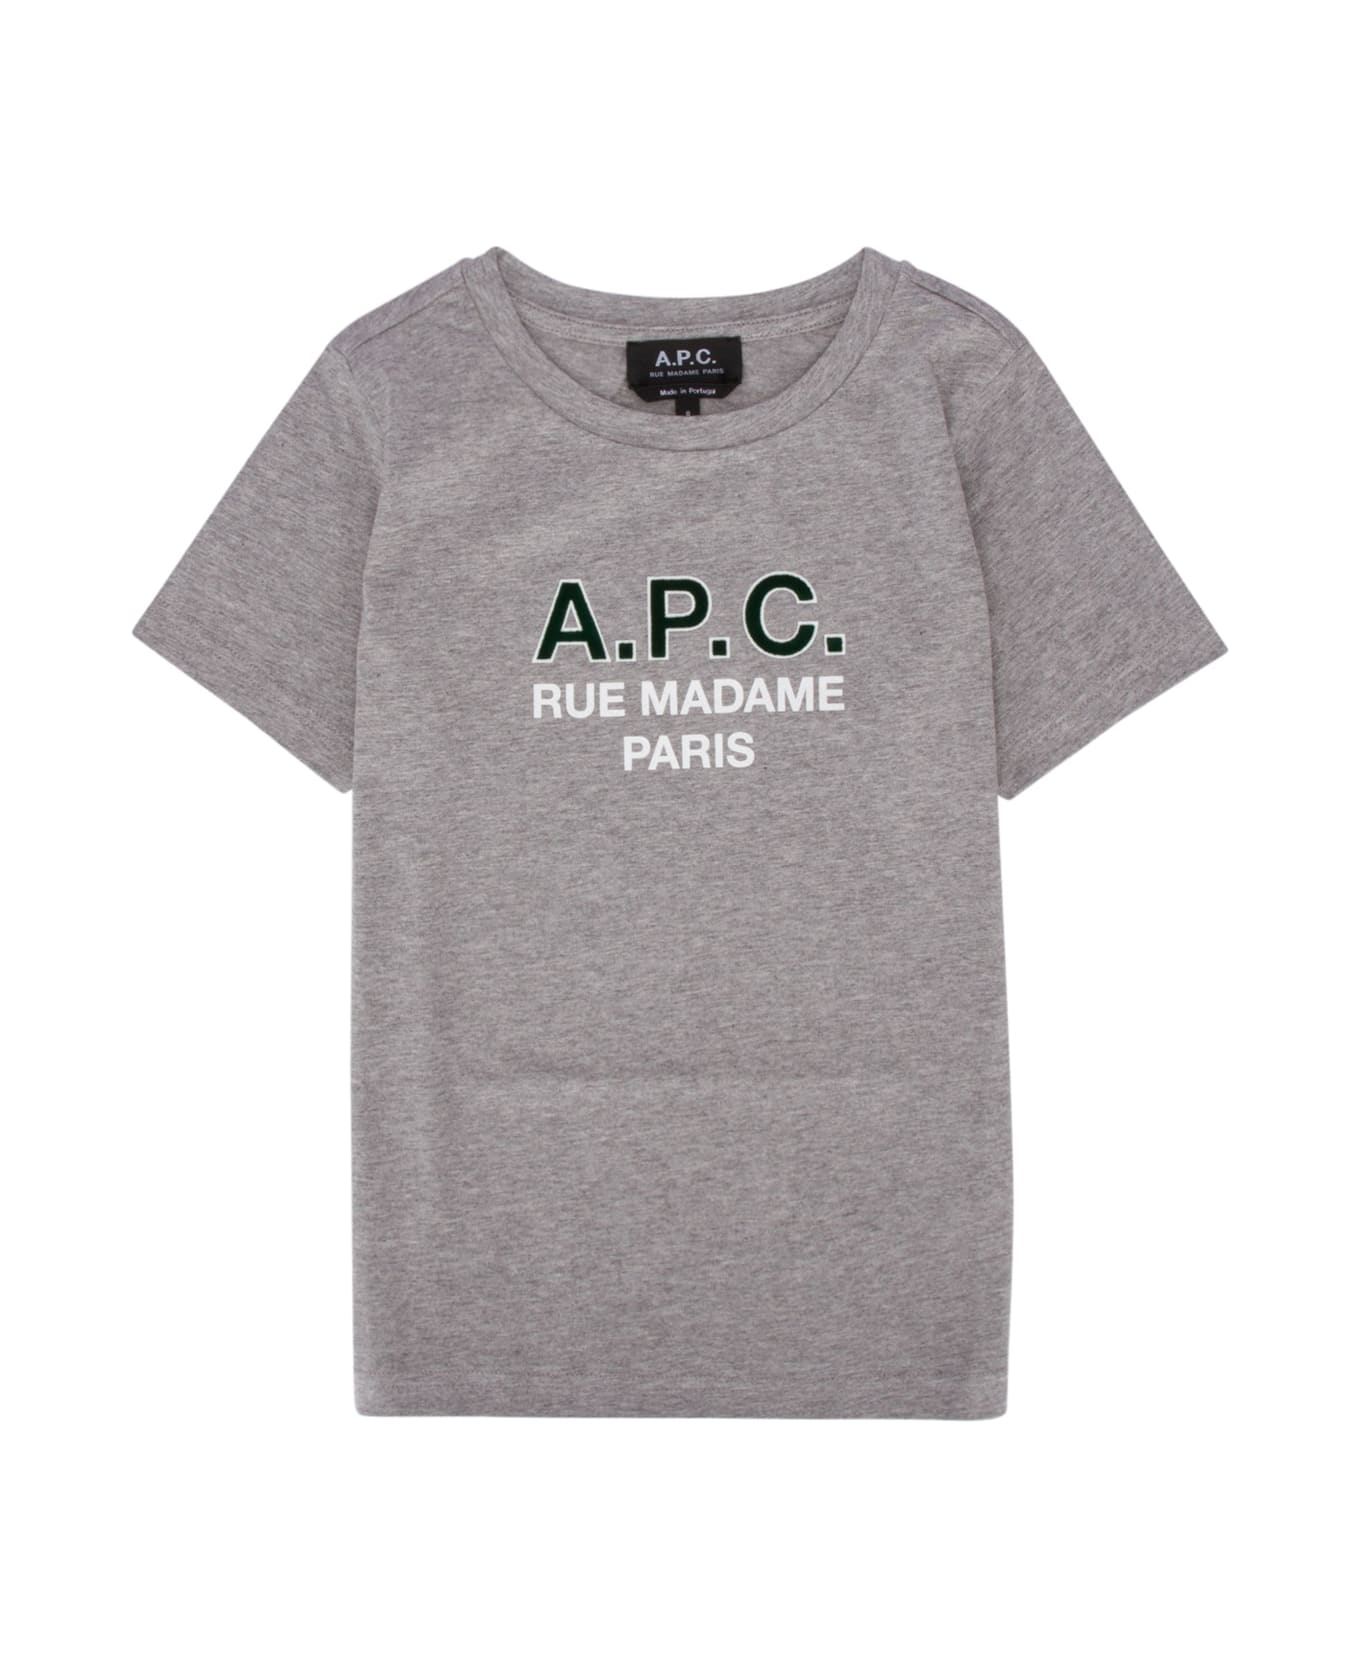 A.P.C. T-shirt - PLAHEATHEREDGREY